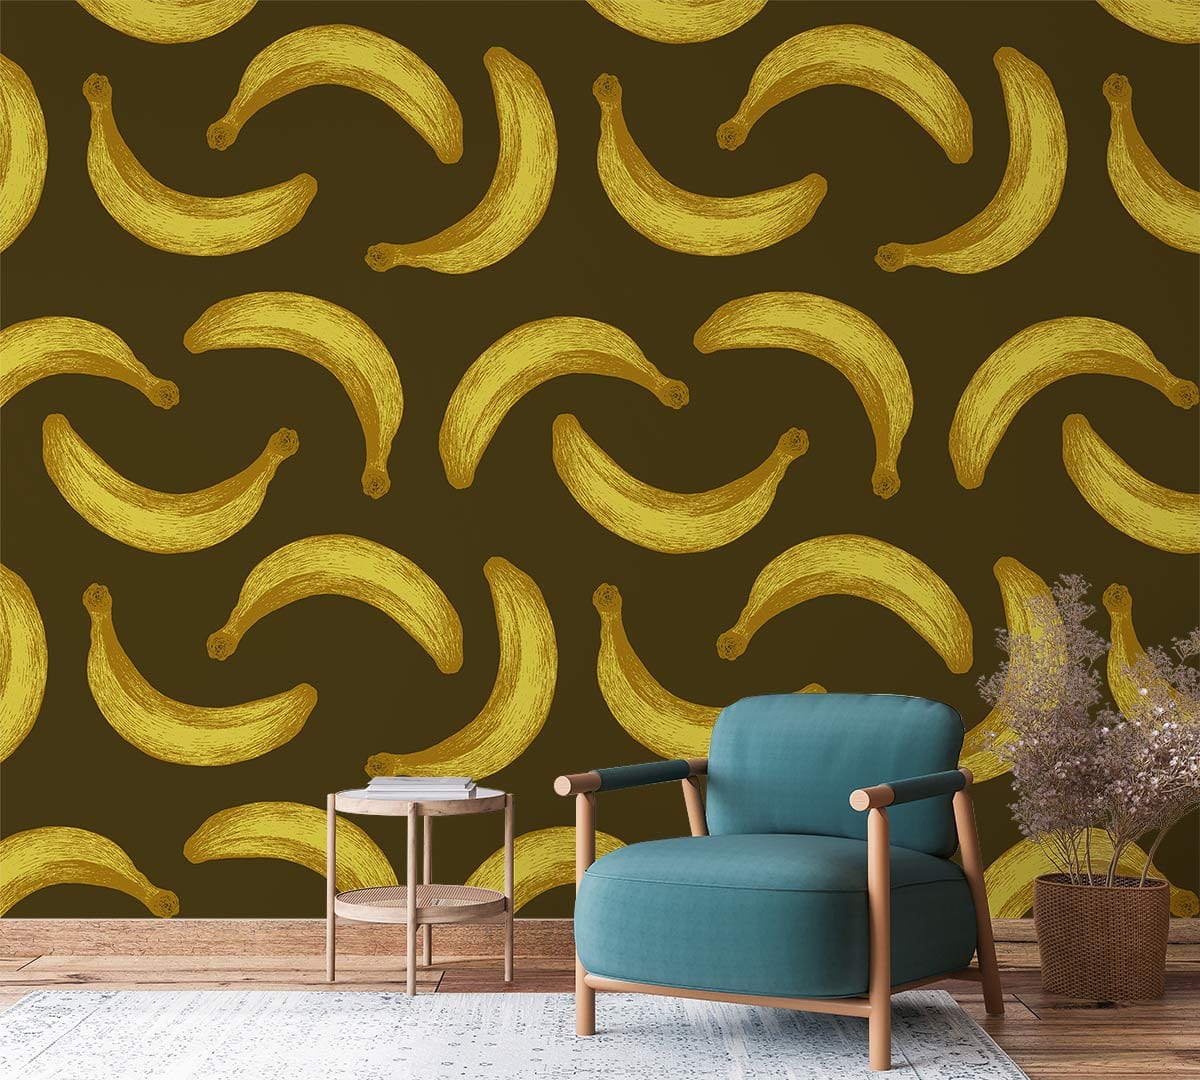 Banana pattern fruit Wallpaper Mural for living Room decor